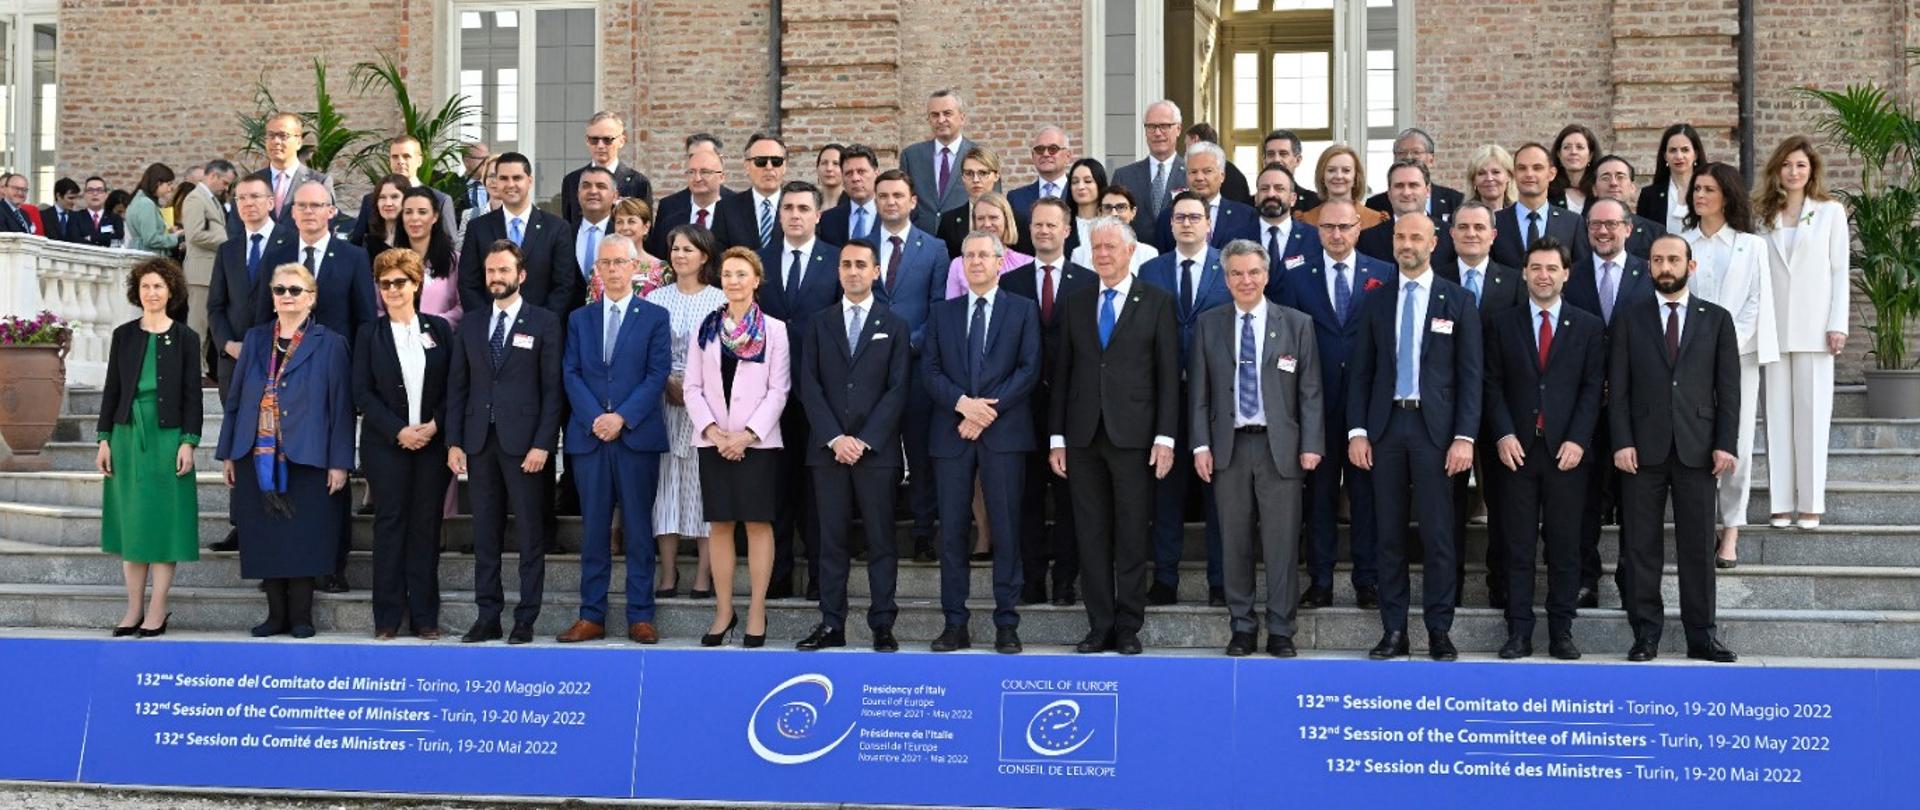 Komitet Ministrów Rady Europy